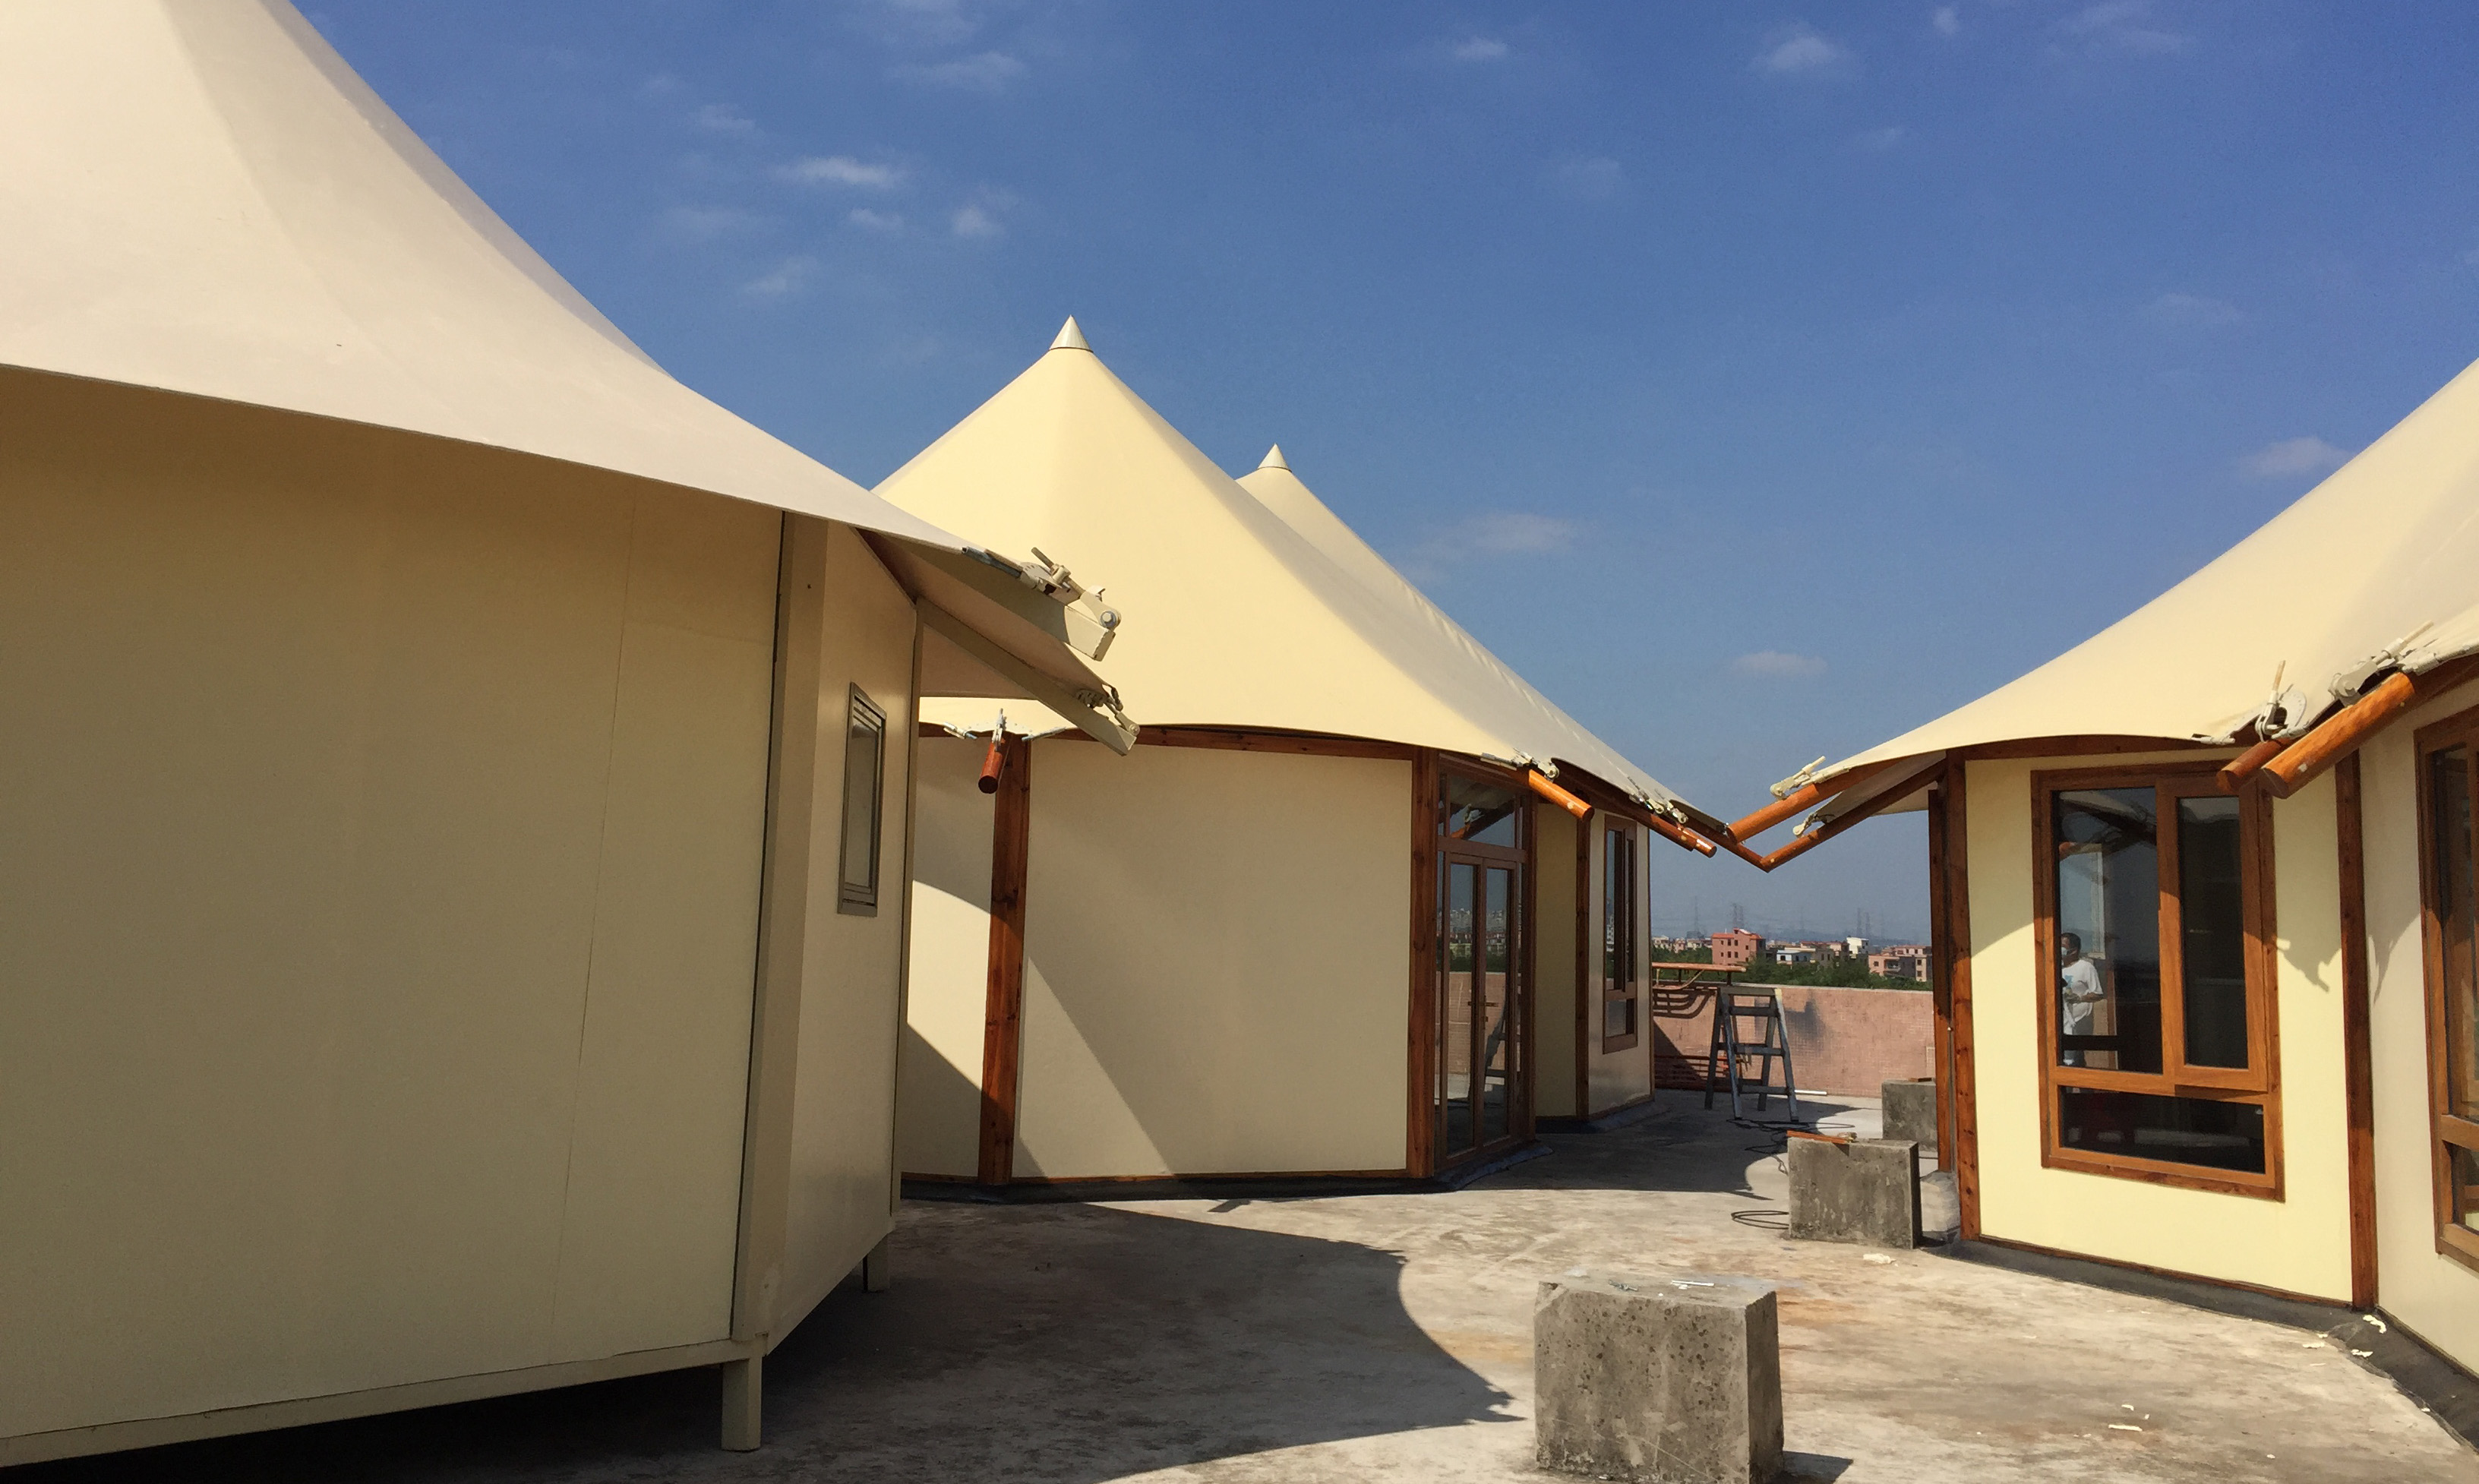 wielokątna płócienna ściana safari Lodge hotelowy namiot wypoczynkowy